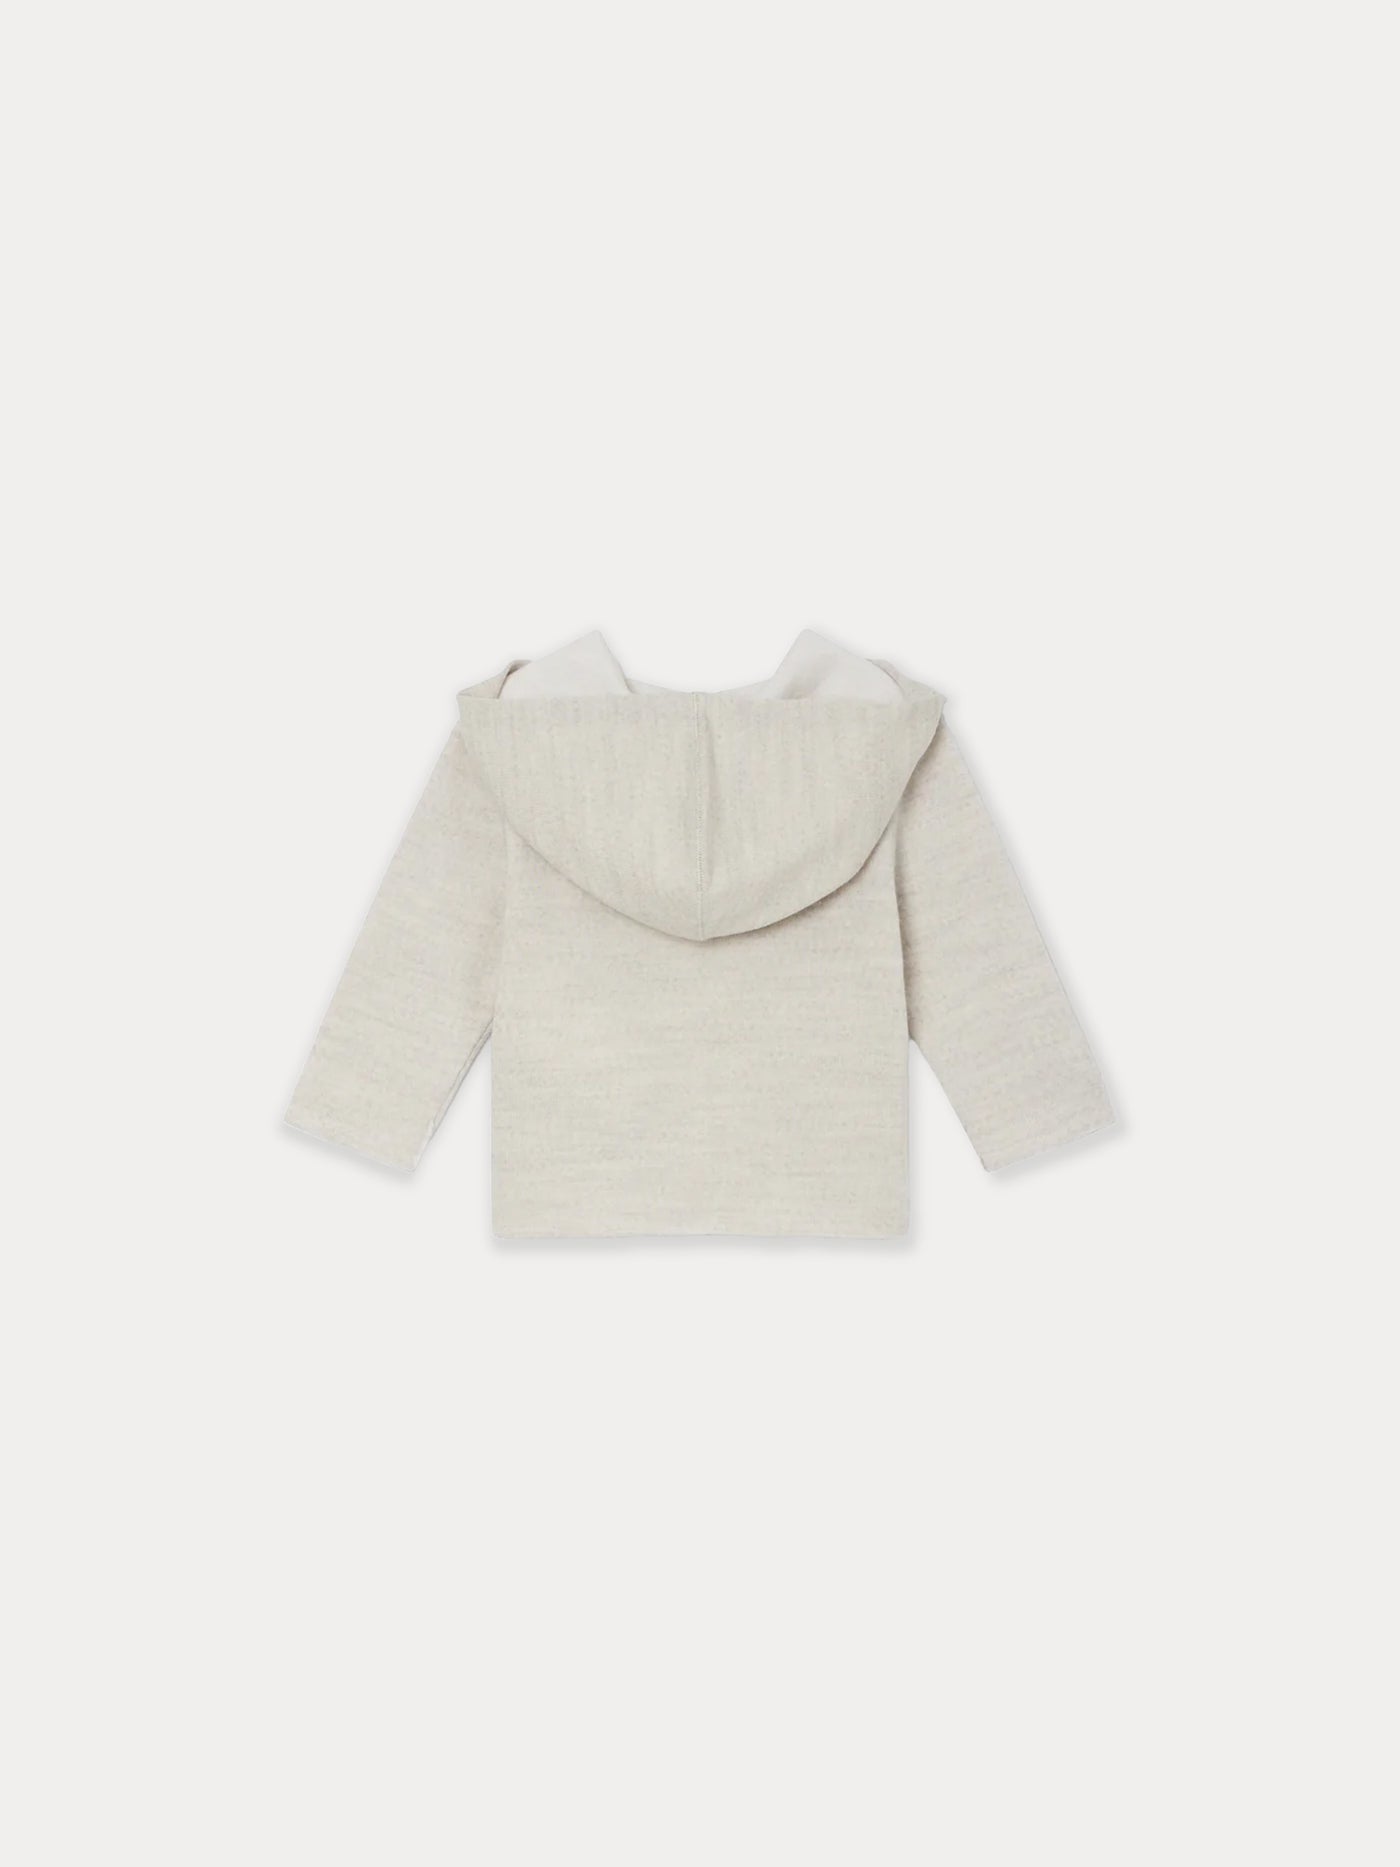 Merino Sweatshirt for Baby heathered gray